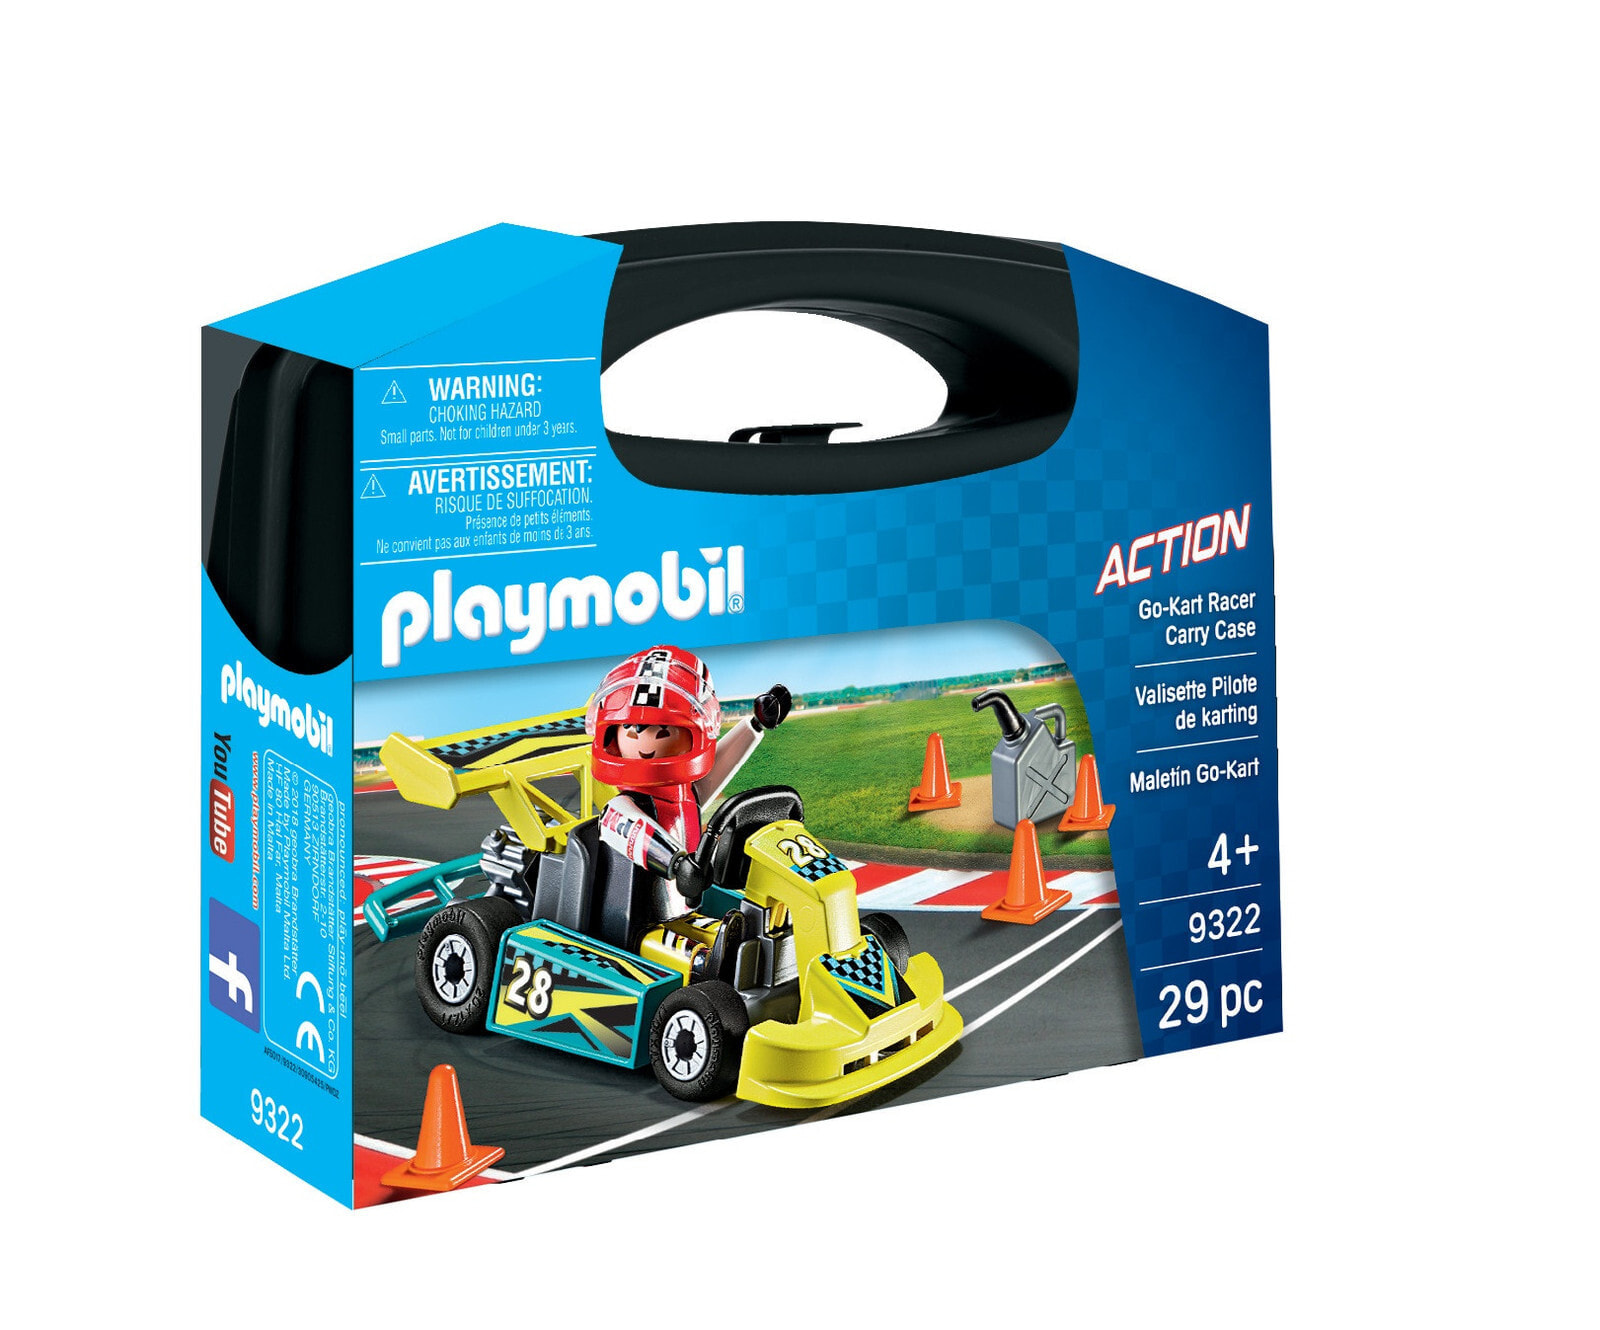 Детский игровой набор и фигурка из дерева geobra Brandstätter GmbH & Co. KG Playmobil Action Go-Kart Racer Carry Case, Collectible figure, Children, Movie & TV series, 261.5 g